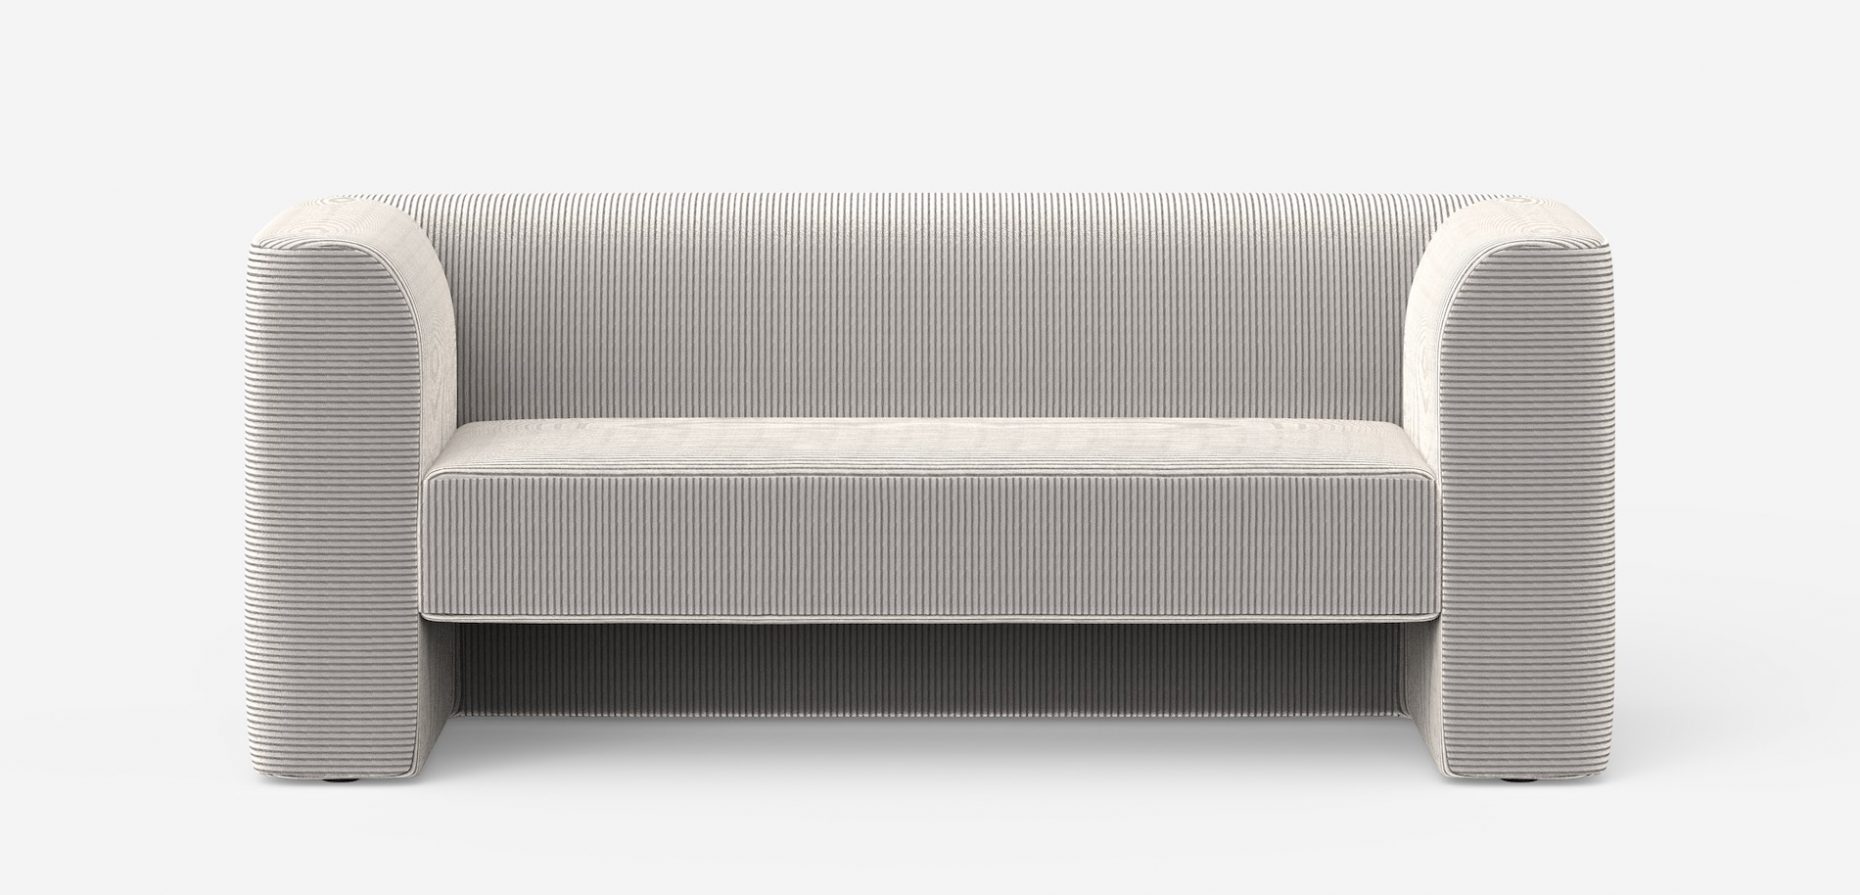 Die neue Sofagruppe F8 von Tecta verweist unverkennbar auf Bauhaus-Klassiker wie jene von Walter Gropius. Das Designerduo Geckeler Michels legte zugleich viel Wert auf Komfort und Gemütlichkeit. Rendering: © Geckeler Michels